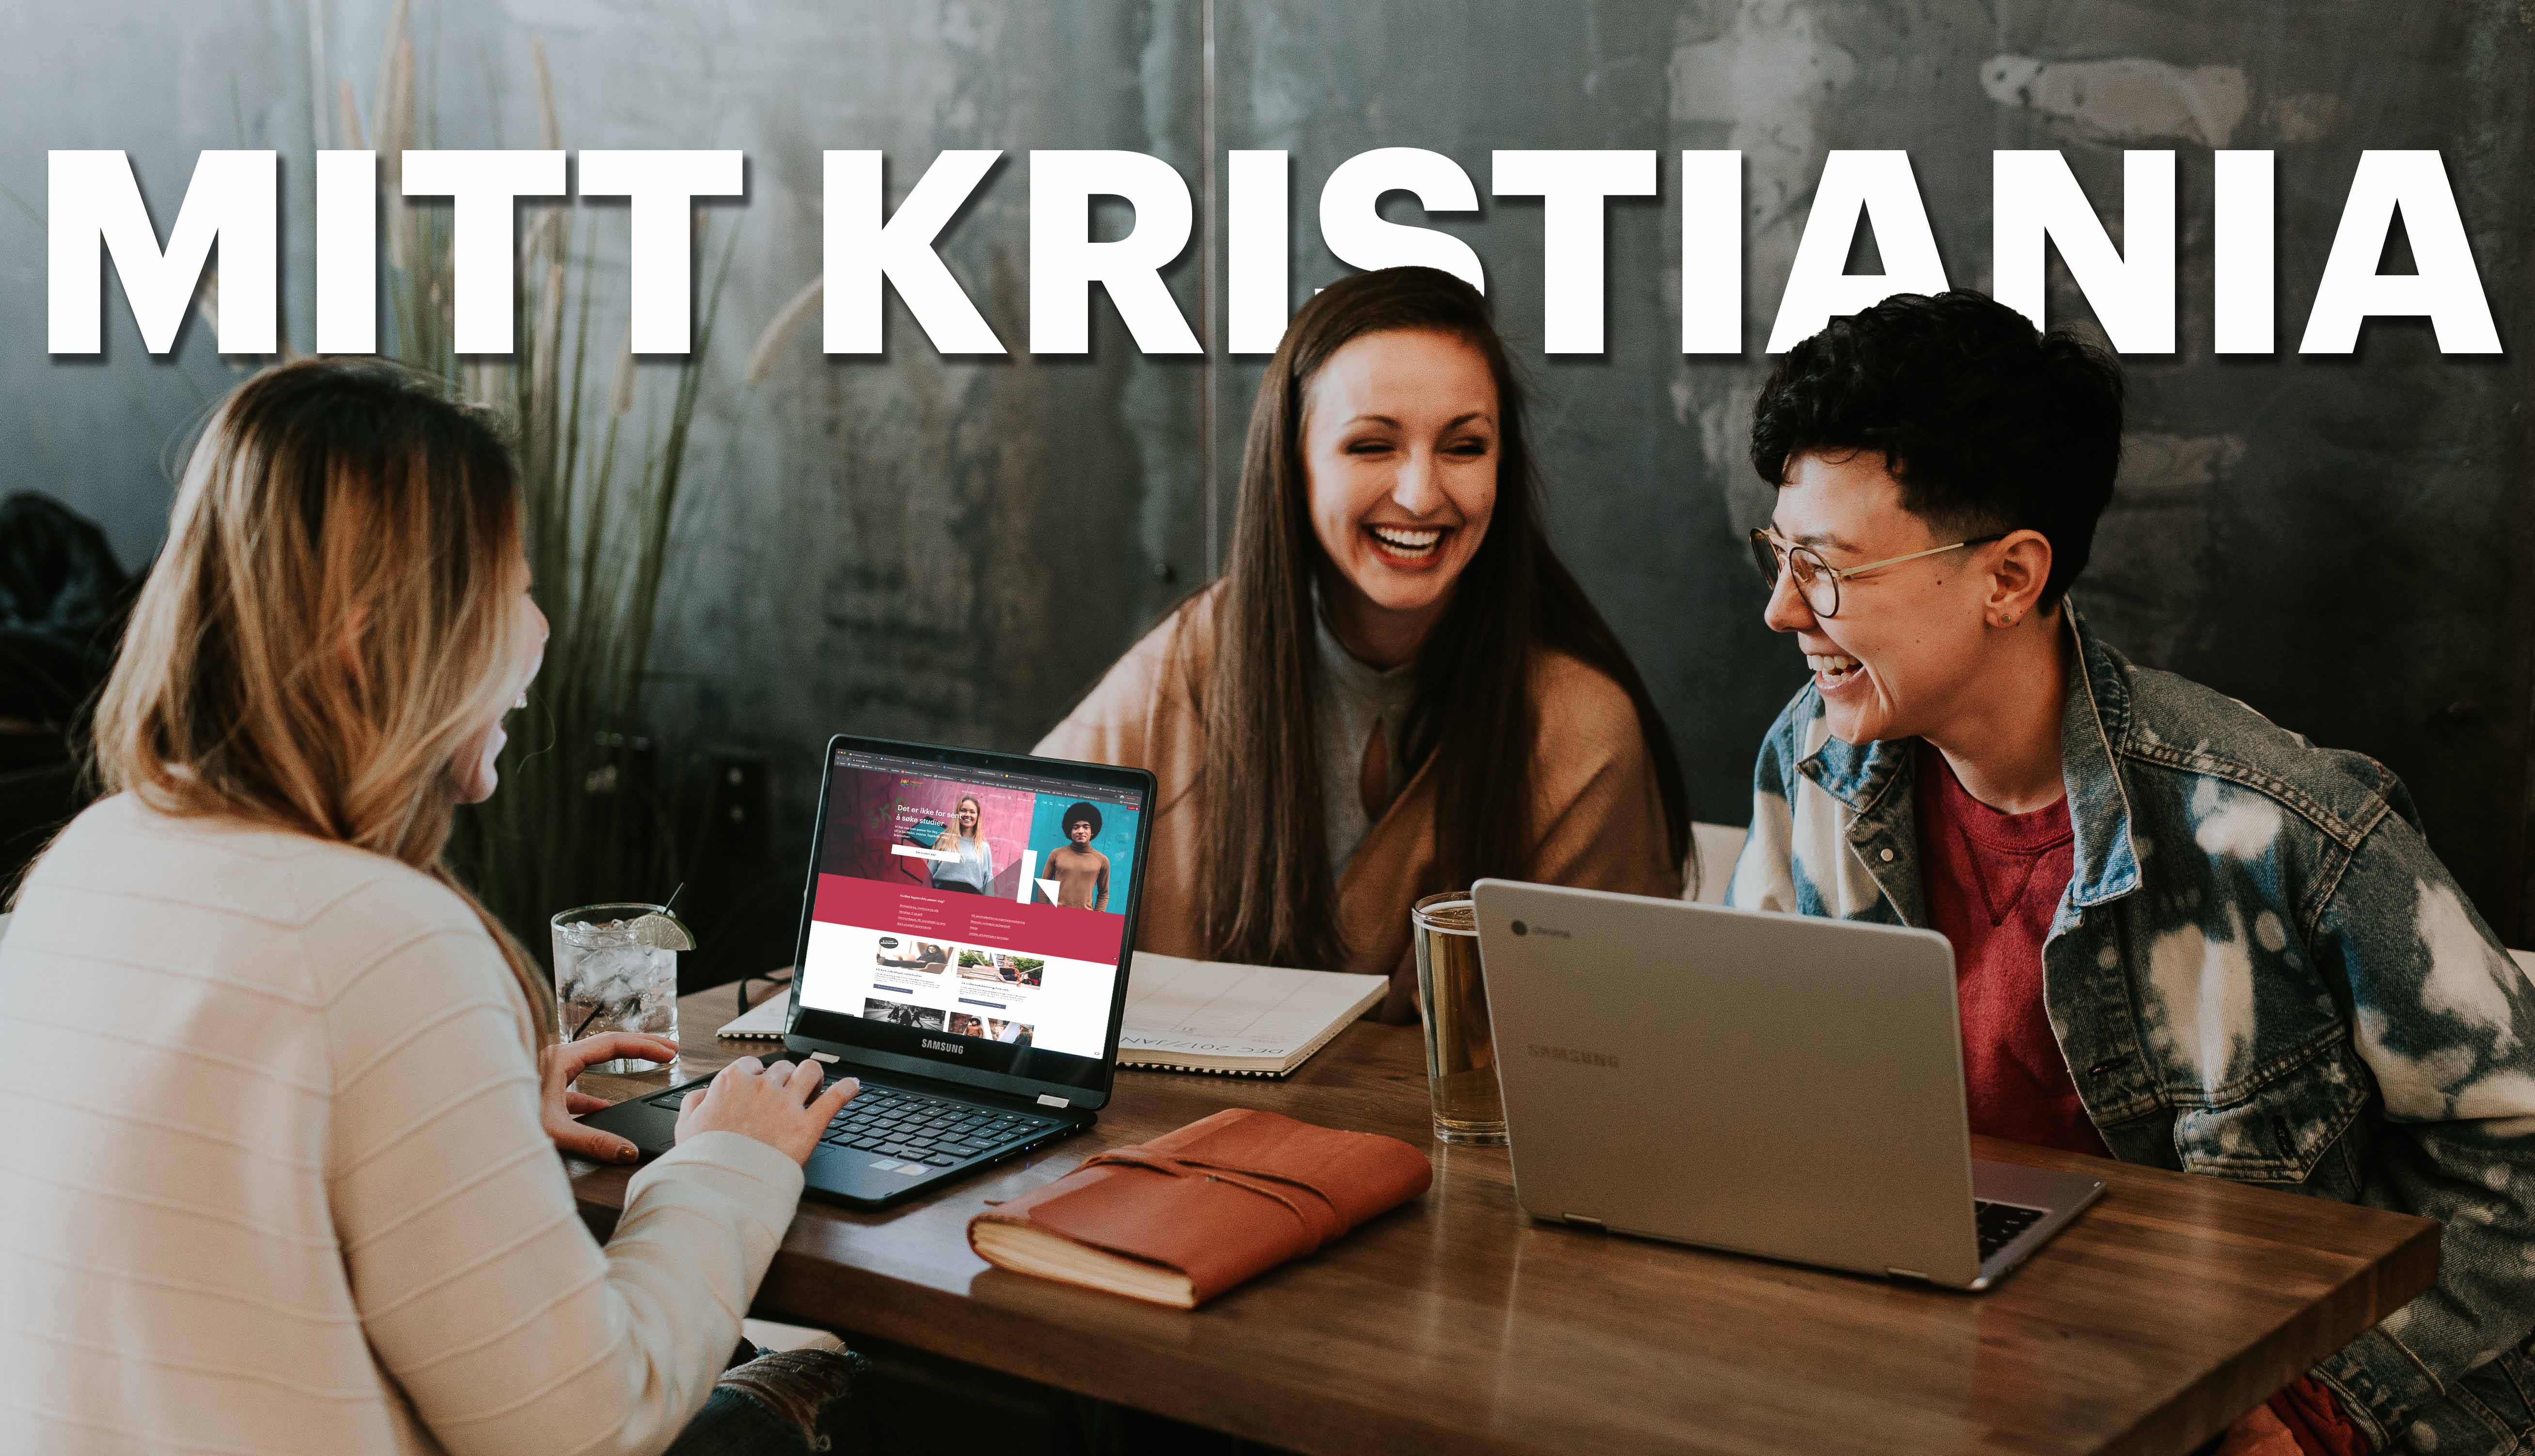 Tre studenter med hver sin laptop sitter rundt bord og hygger seg. Teksten "Mitt Kristiania" kan sees i bildet.